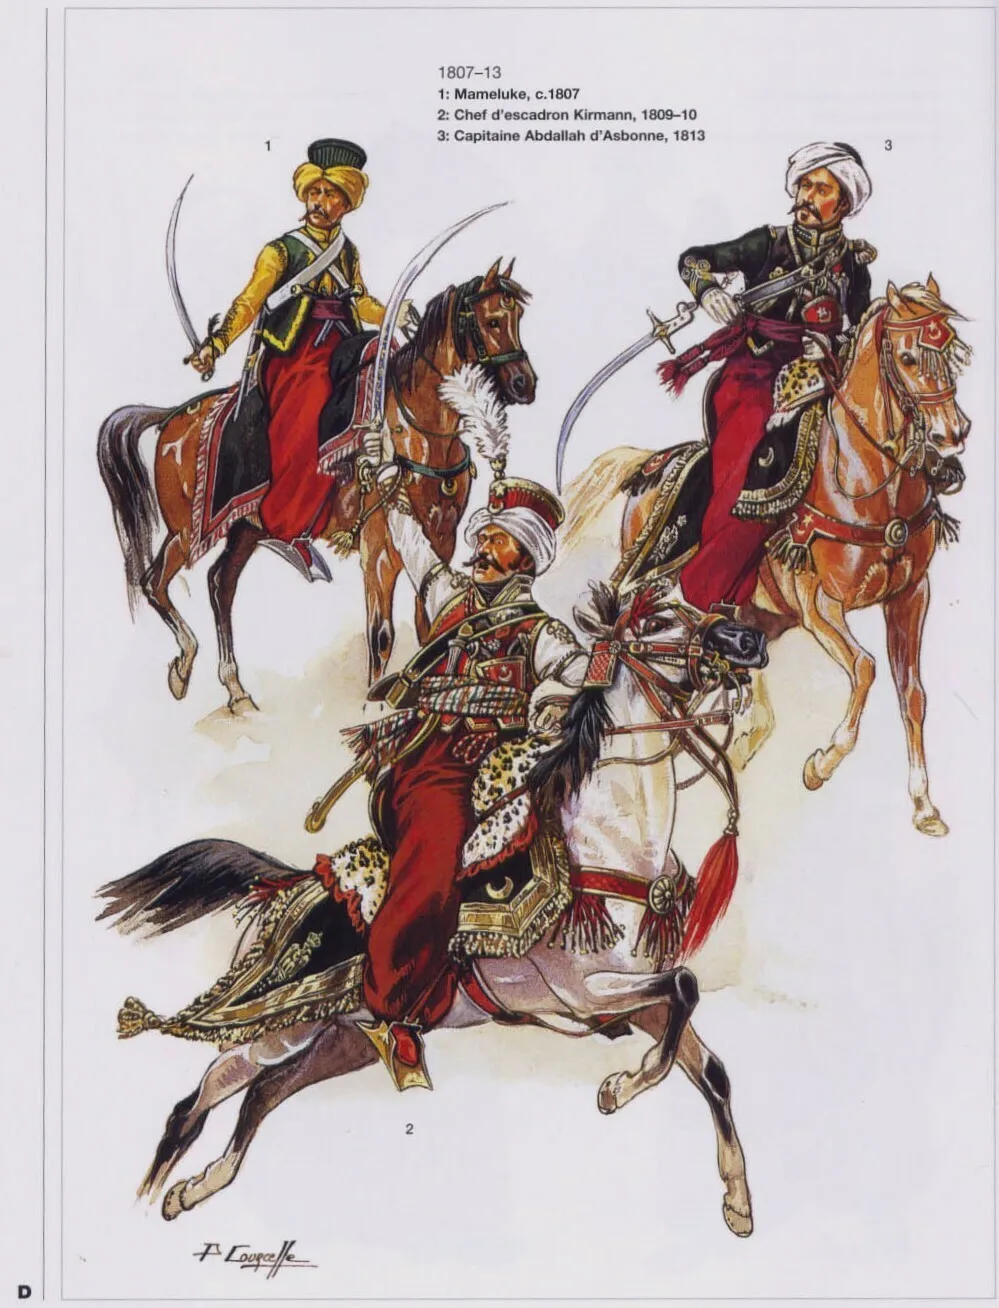 在入侵埃及的战争中，拿破仑发现马穆鲁克骑兵的骑术和肉搏能力优于自己的猎骑兵和骠骑兵，因此马穆鲁克骑兵也进入了他的轻骑兵序列里